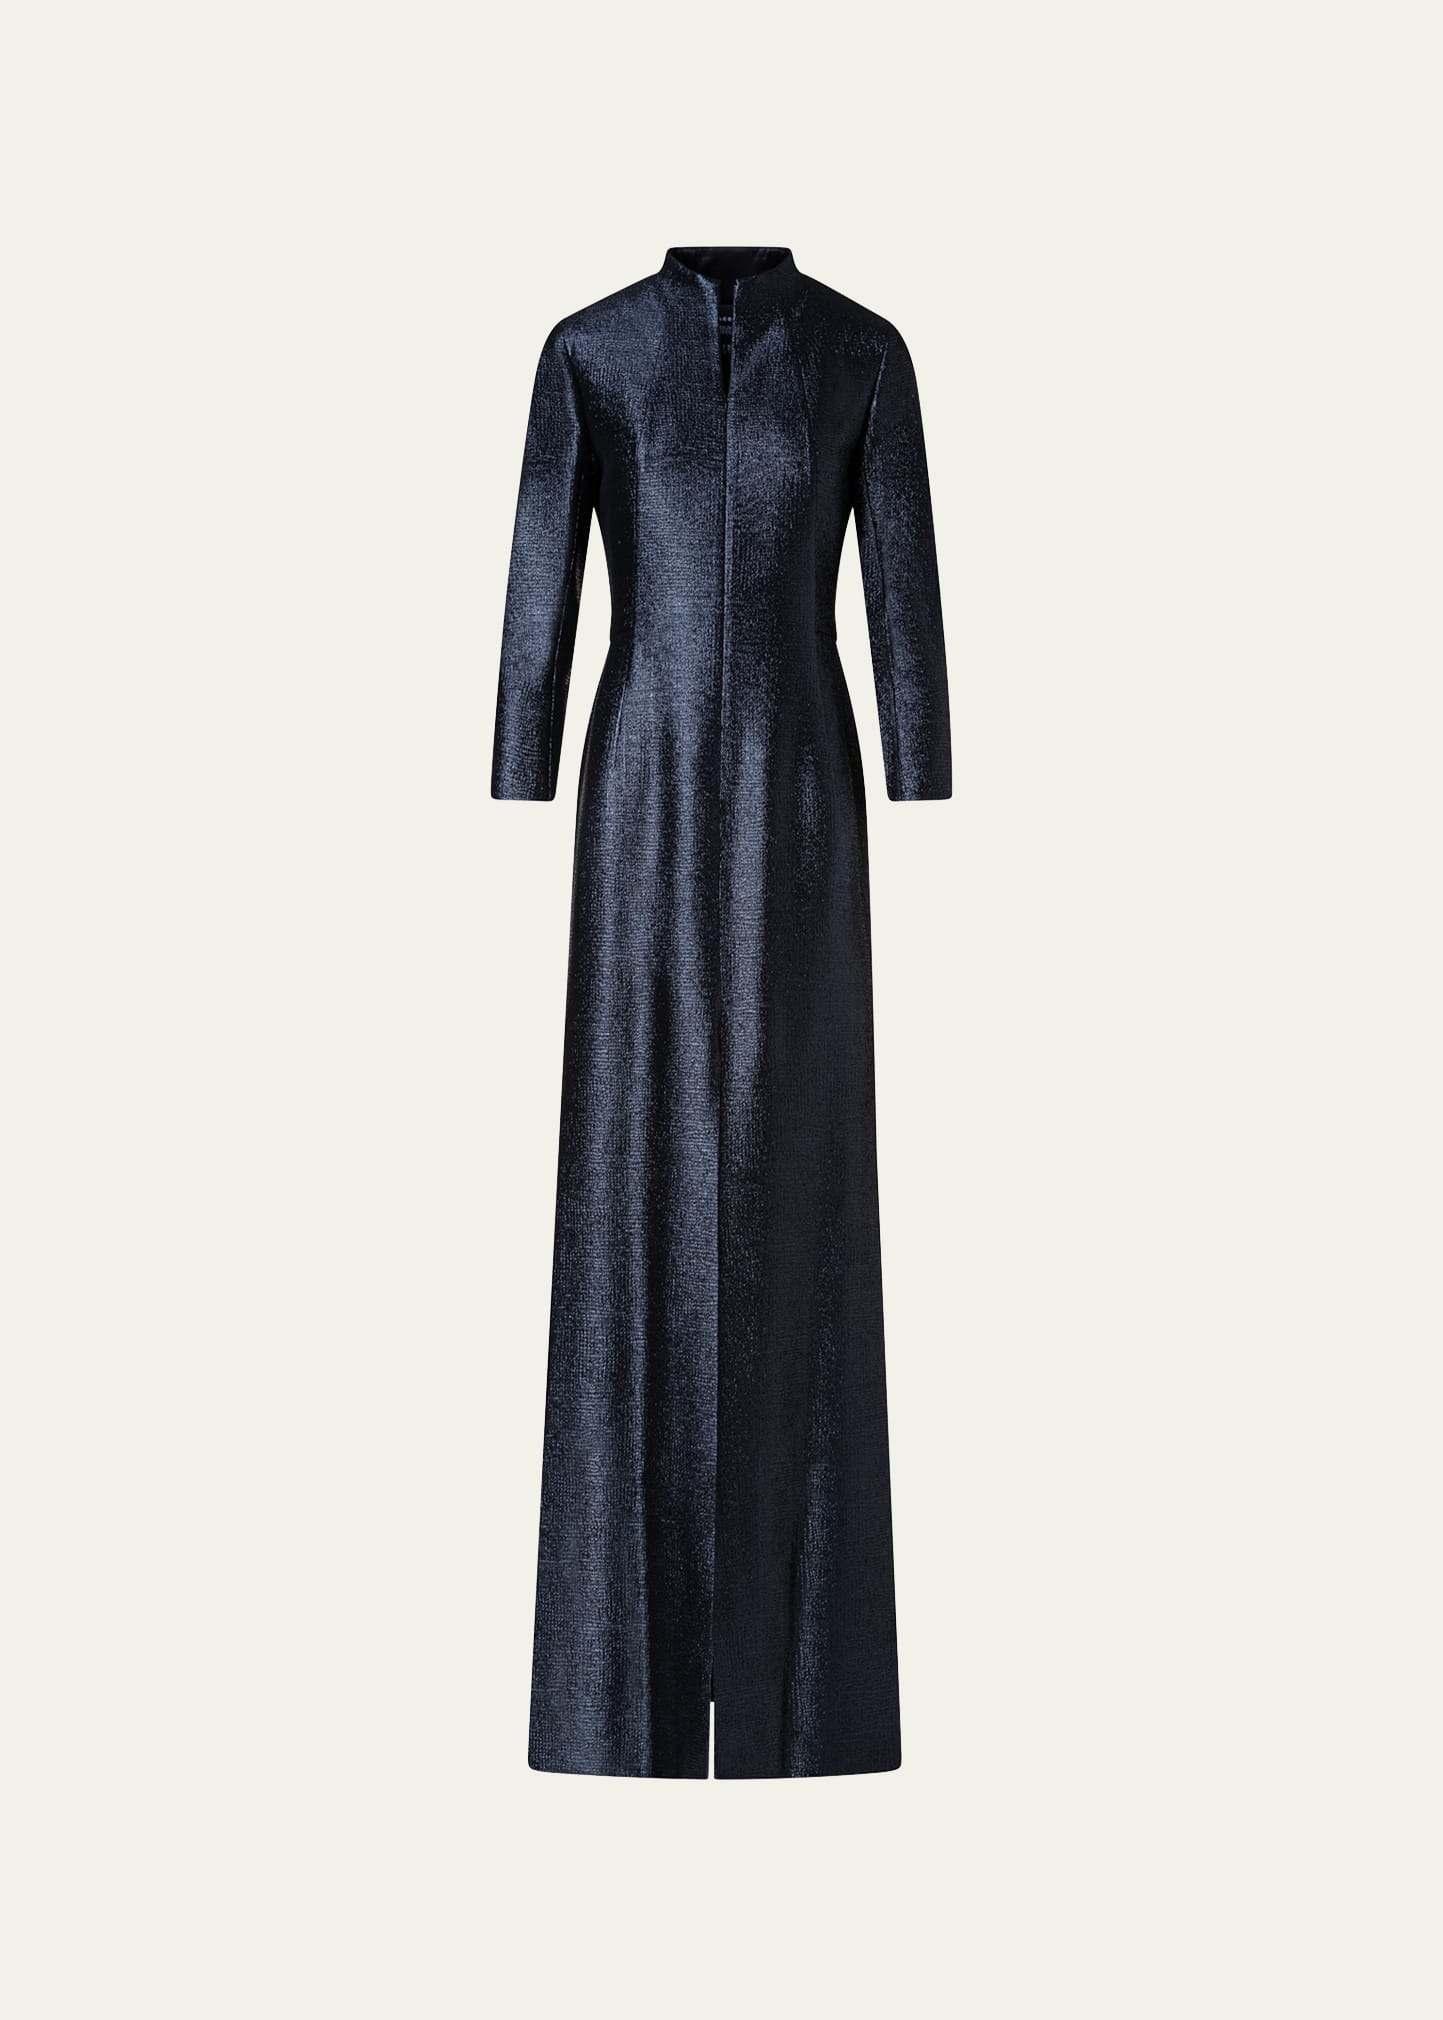 Akris Long Lurex Slit Sheath Dress In Charcoal Grey